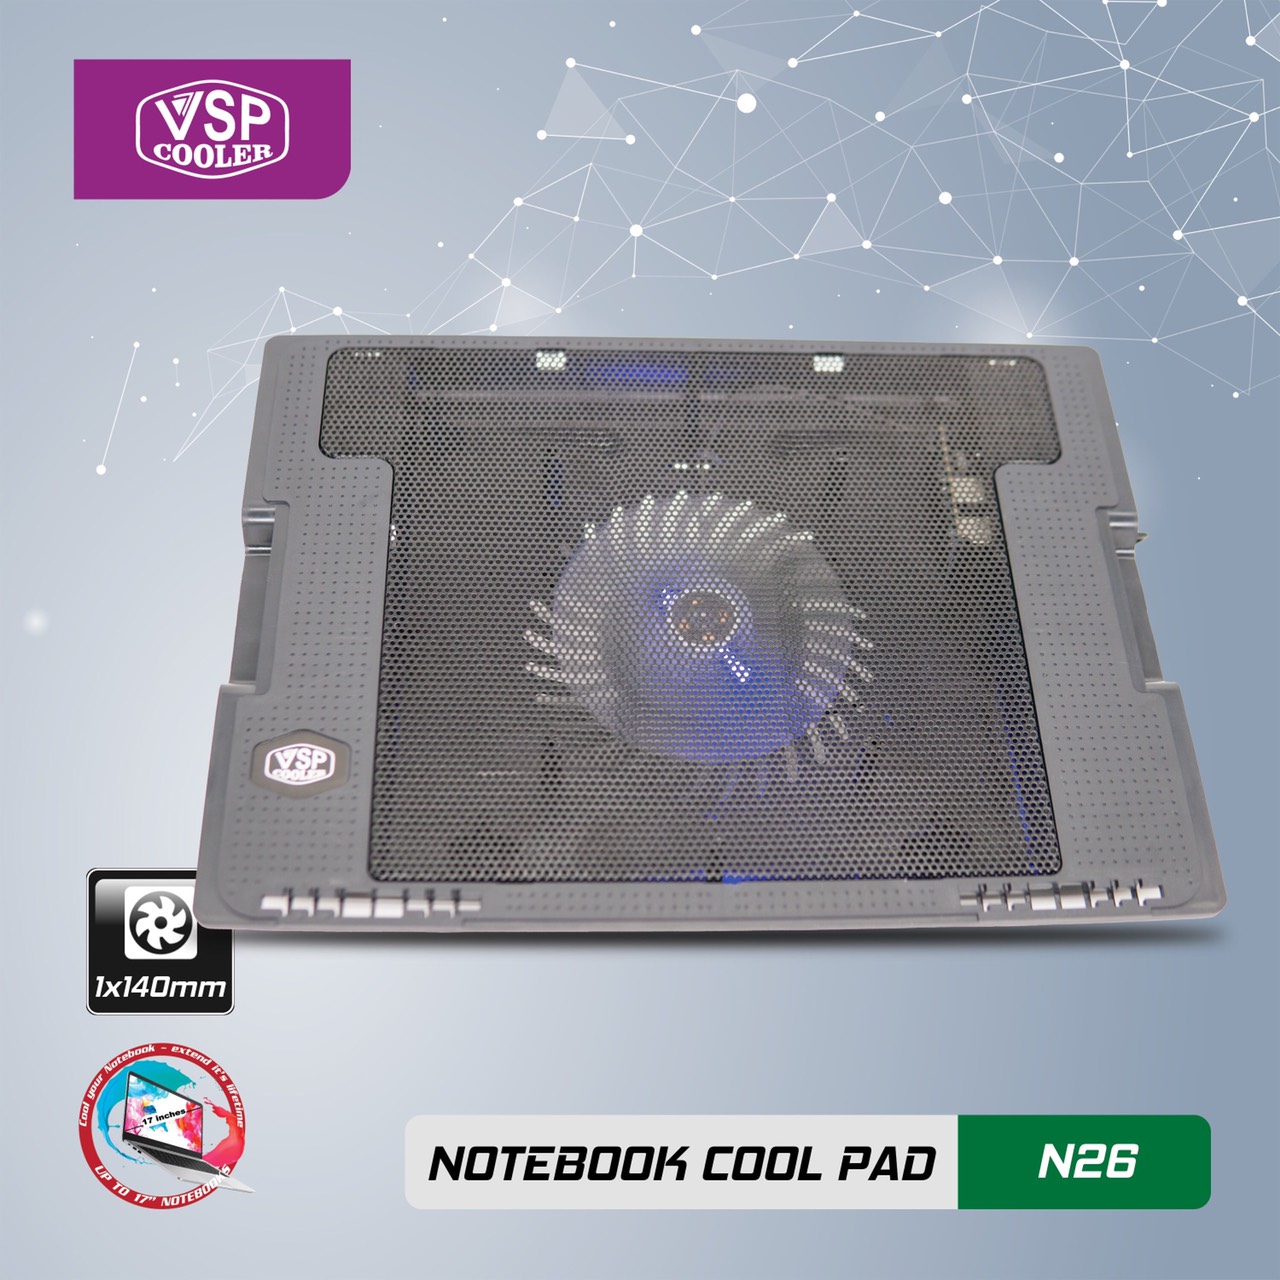 ĐẾ TẢN NHIỆT VSP Cooler N26 (1*Fan 14cm) - giao ngẫu nhiên - hàng nhập khẩu